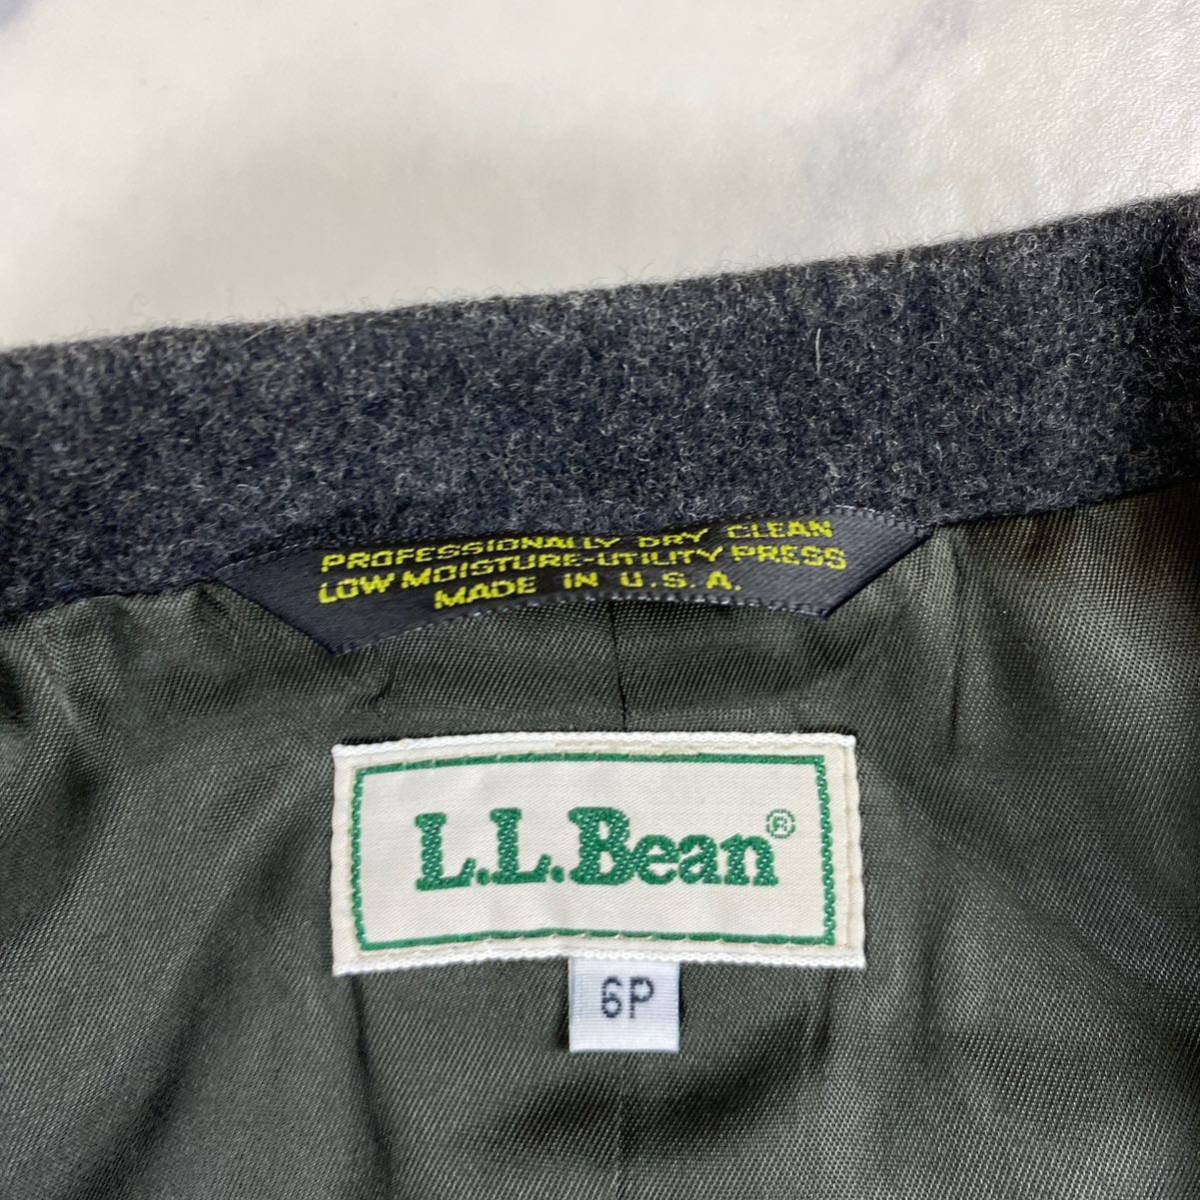 超希少 極美品 L.L.Bean エルエルビーン テーラードジャケット 70s 80s USA製 カシミア混 メルトン 2B 6Pサイズ VINTAGE チャコールグレー_画像2